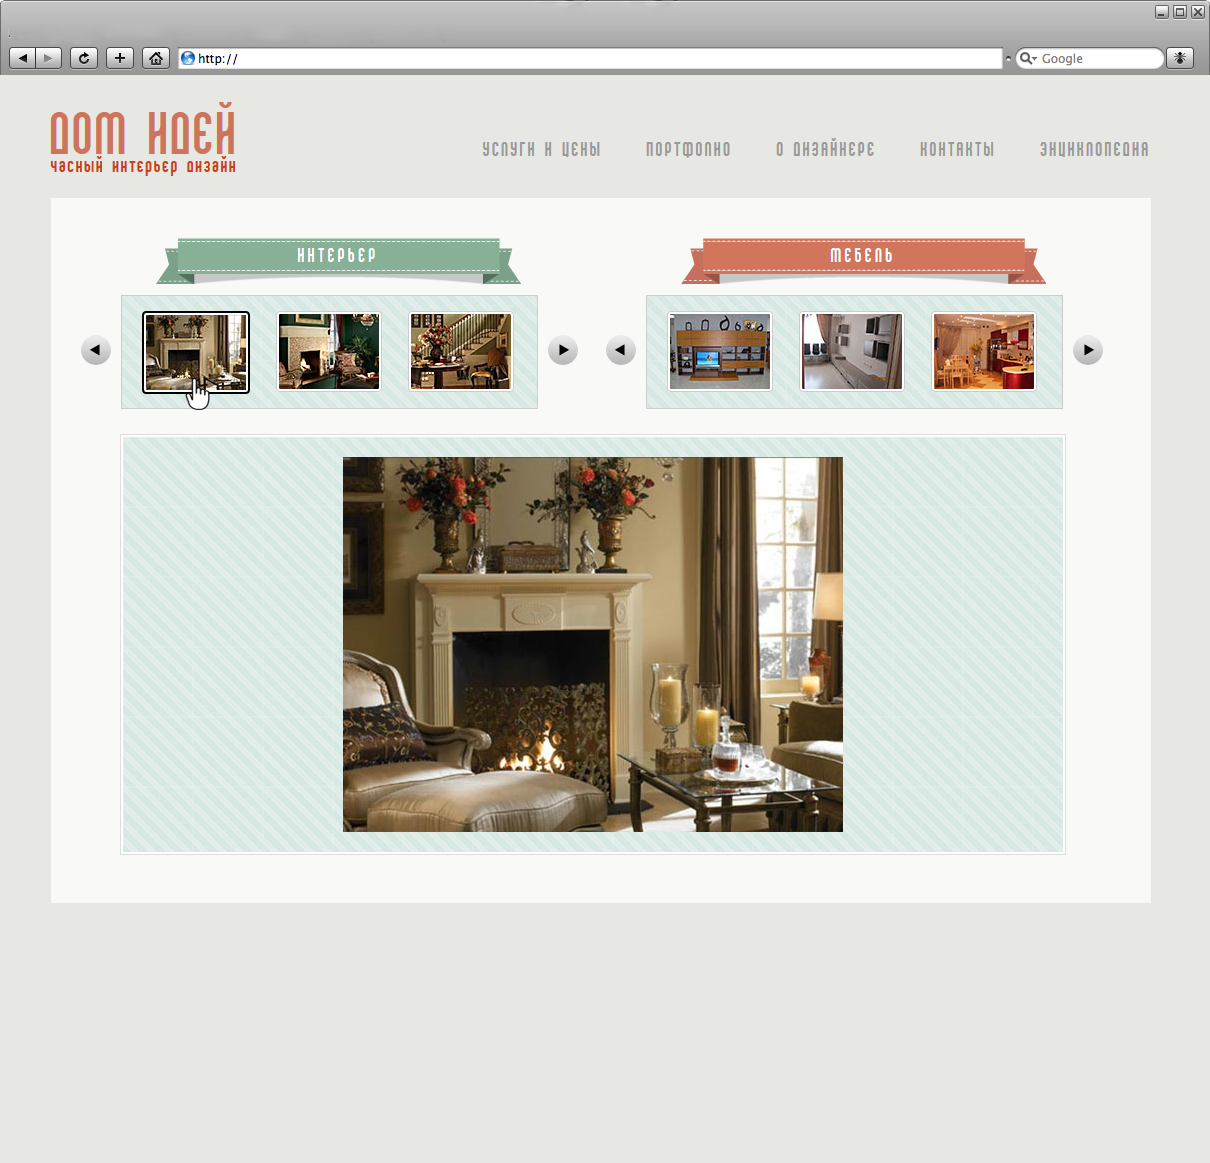 web design, portfolio: interiors and furniture